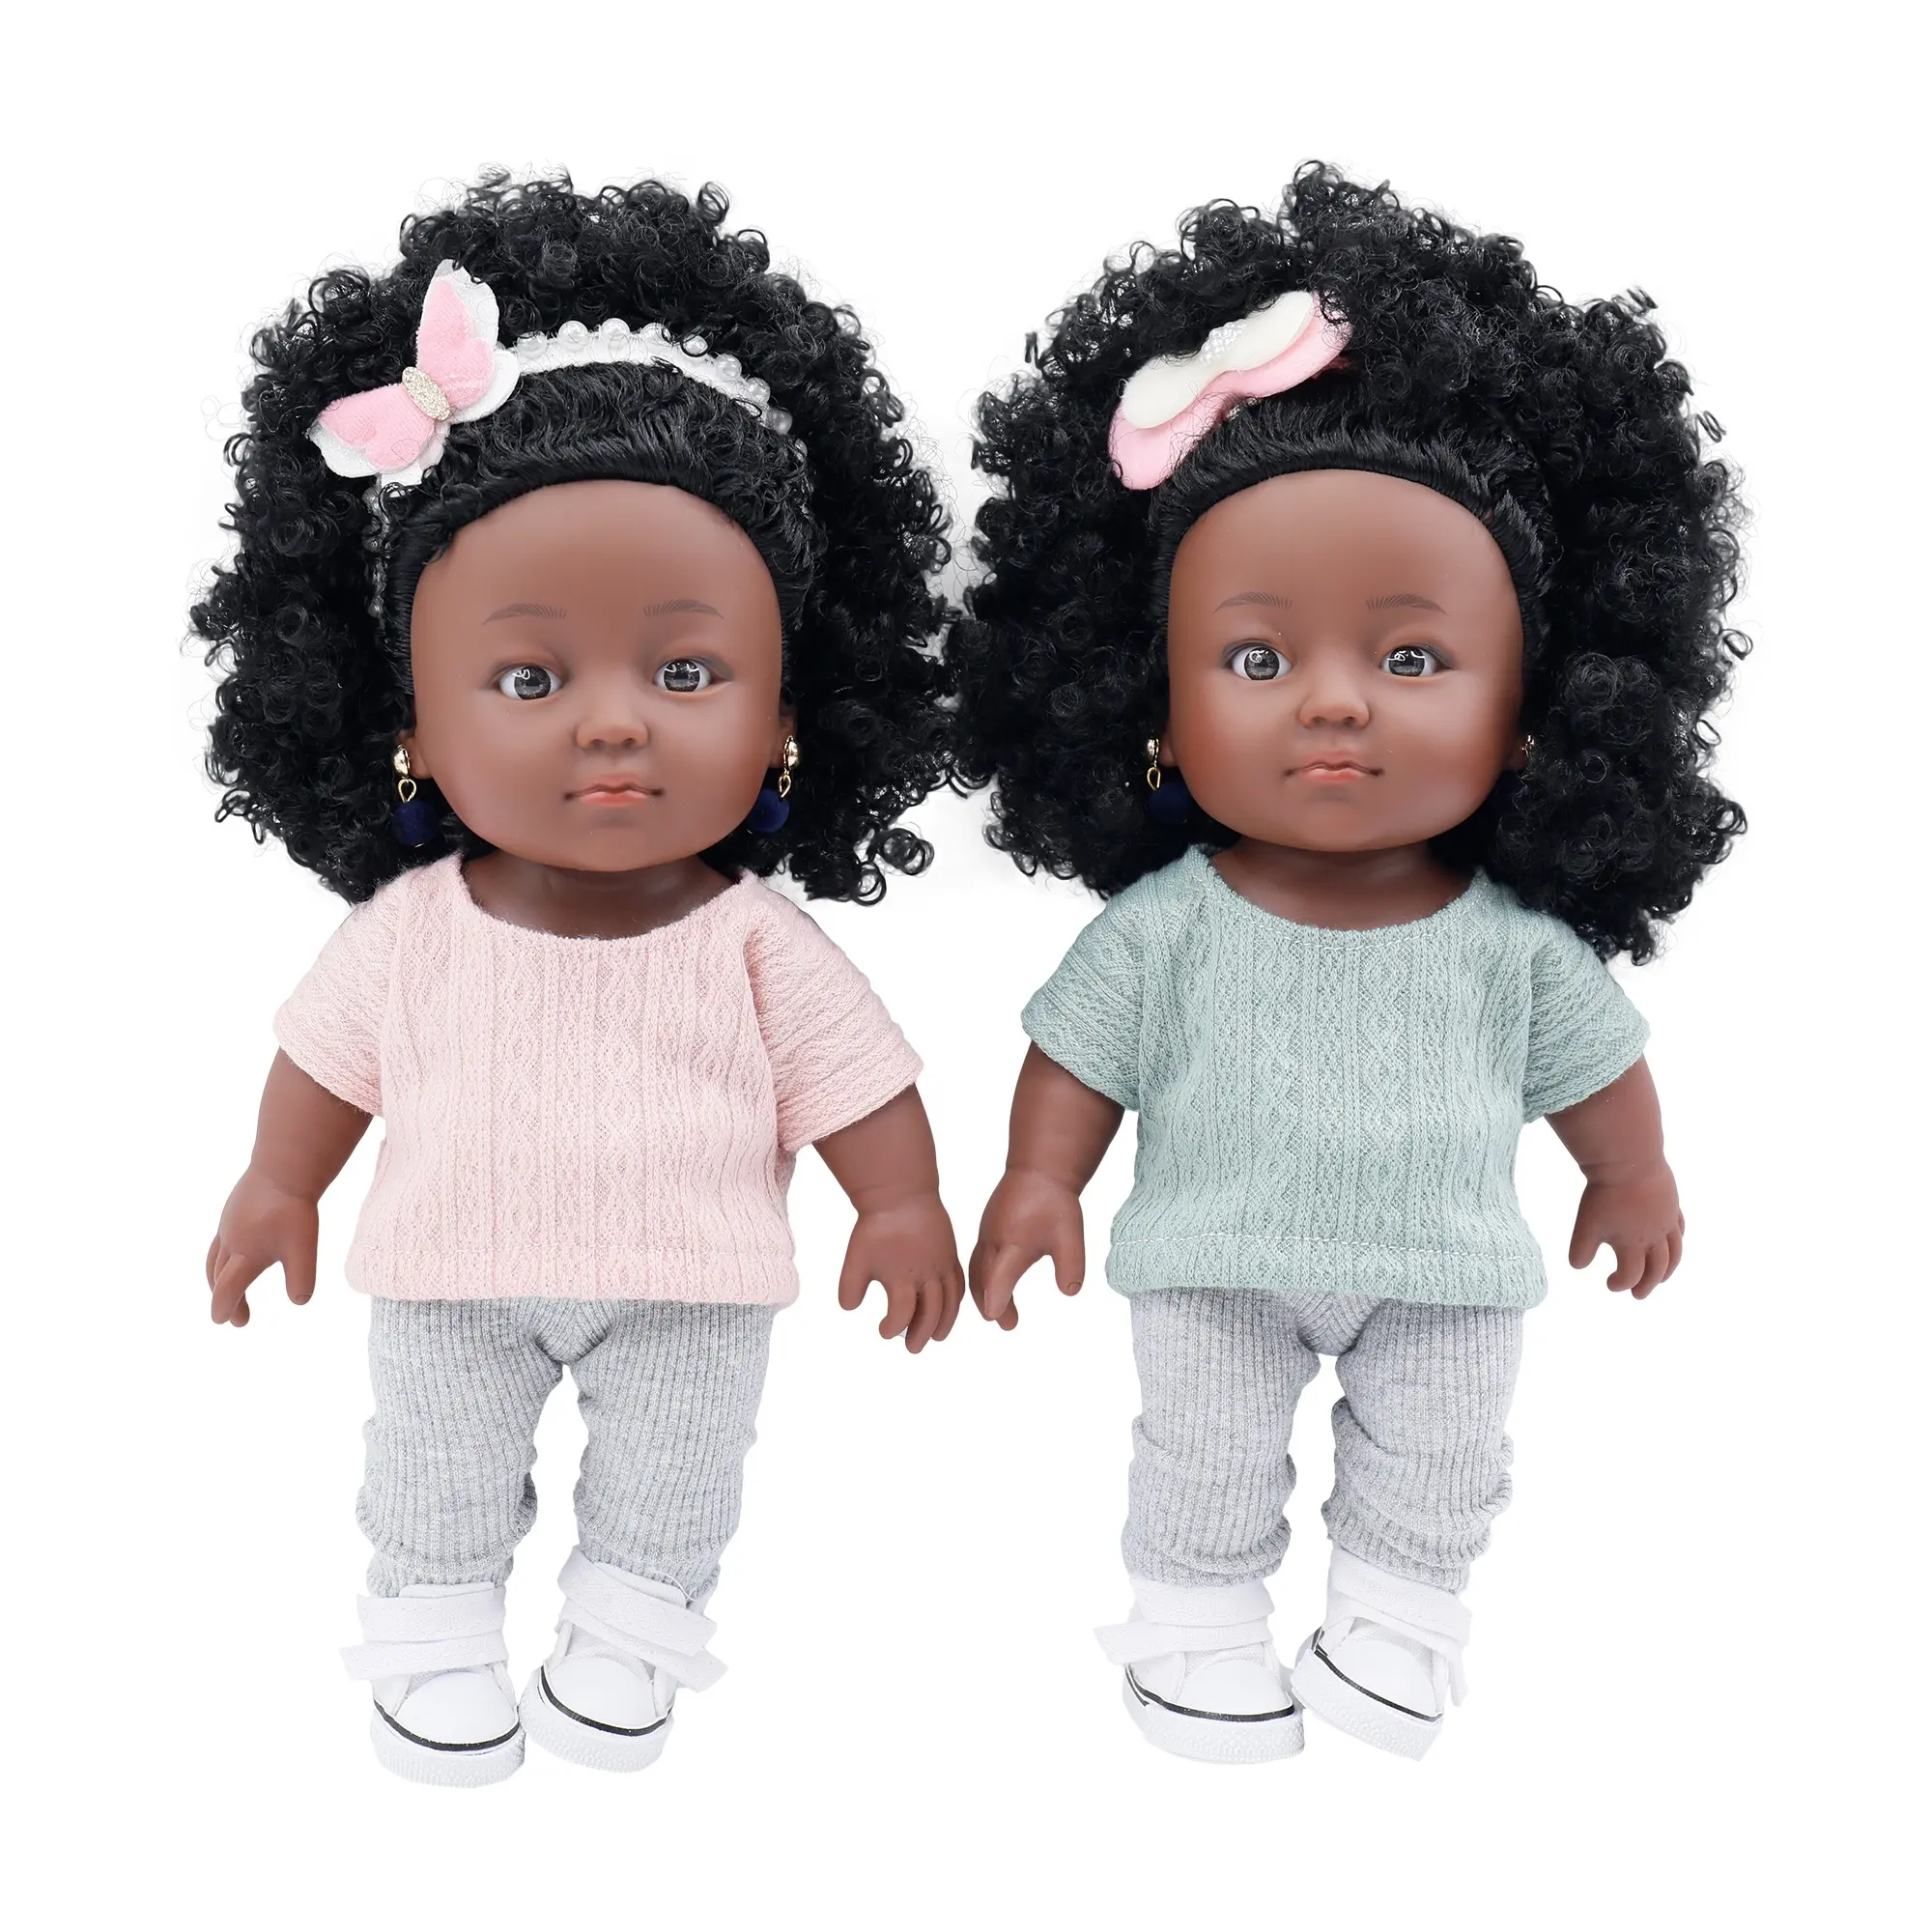 Tusalmo 25CM bambola nera realistica moda bambole regalo nero bambole per bambini